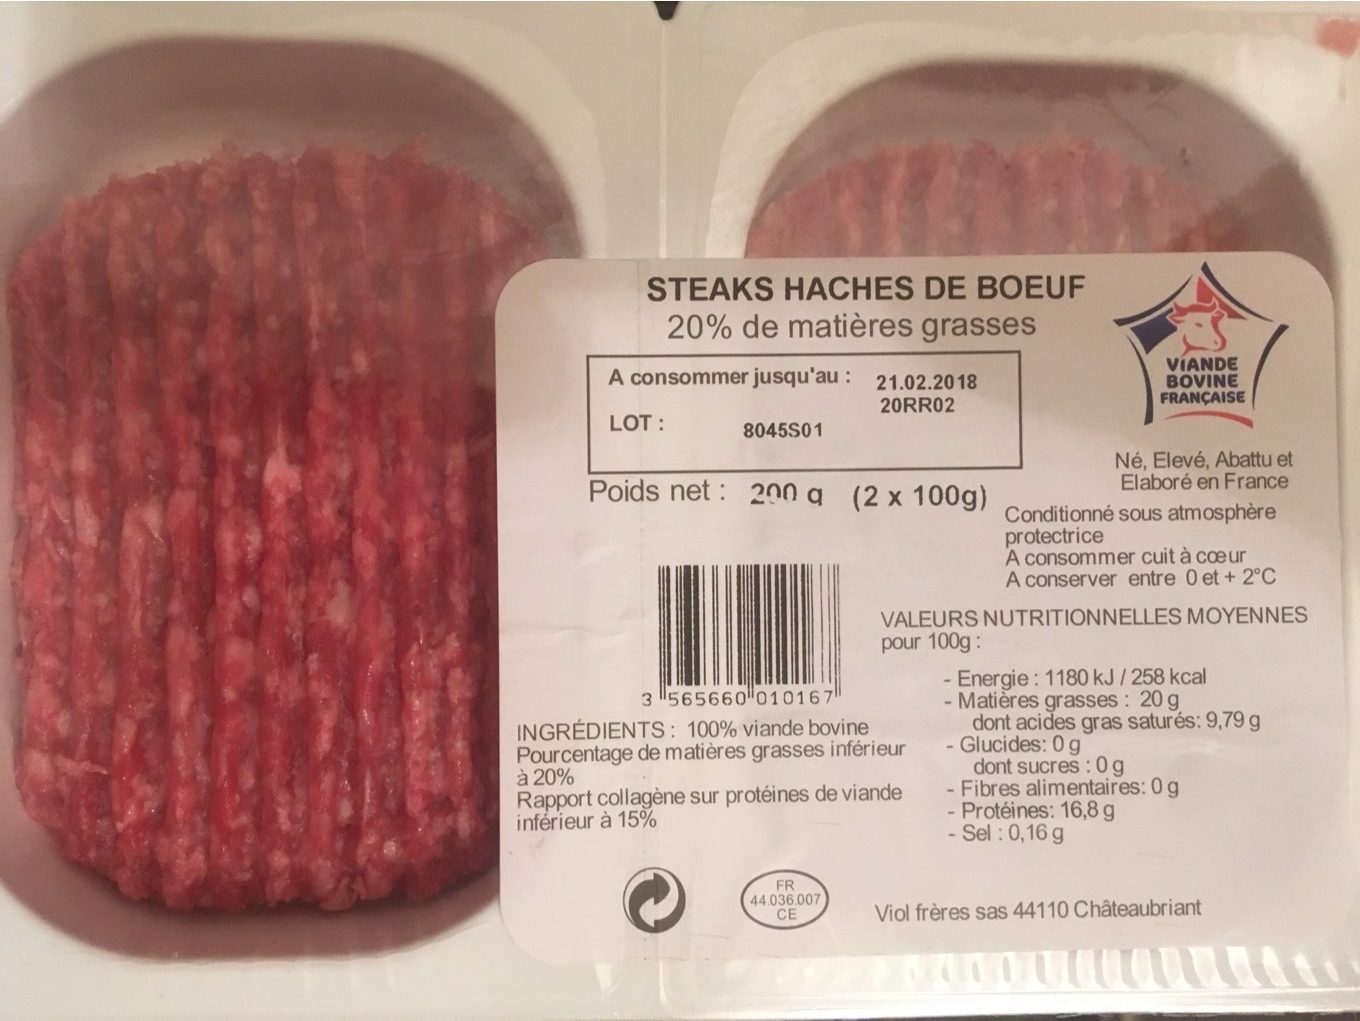 Steaks haches de boeuf - Product - fr